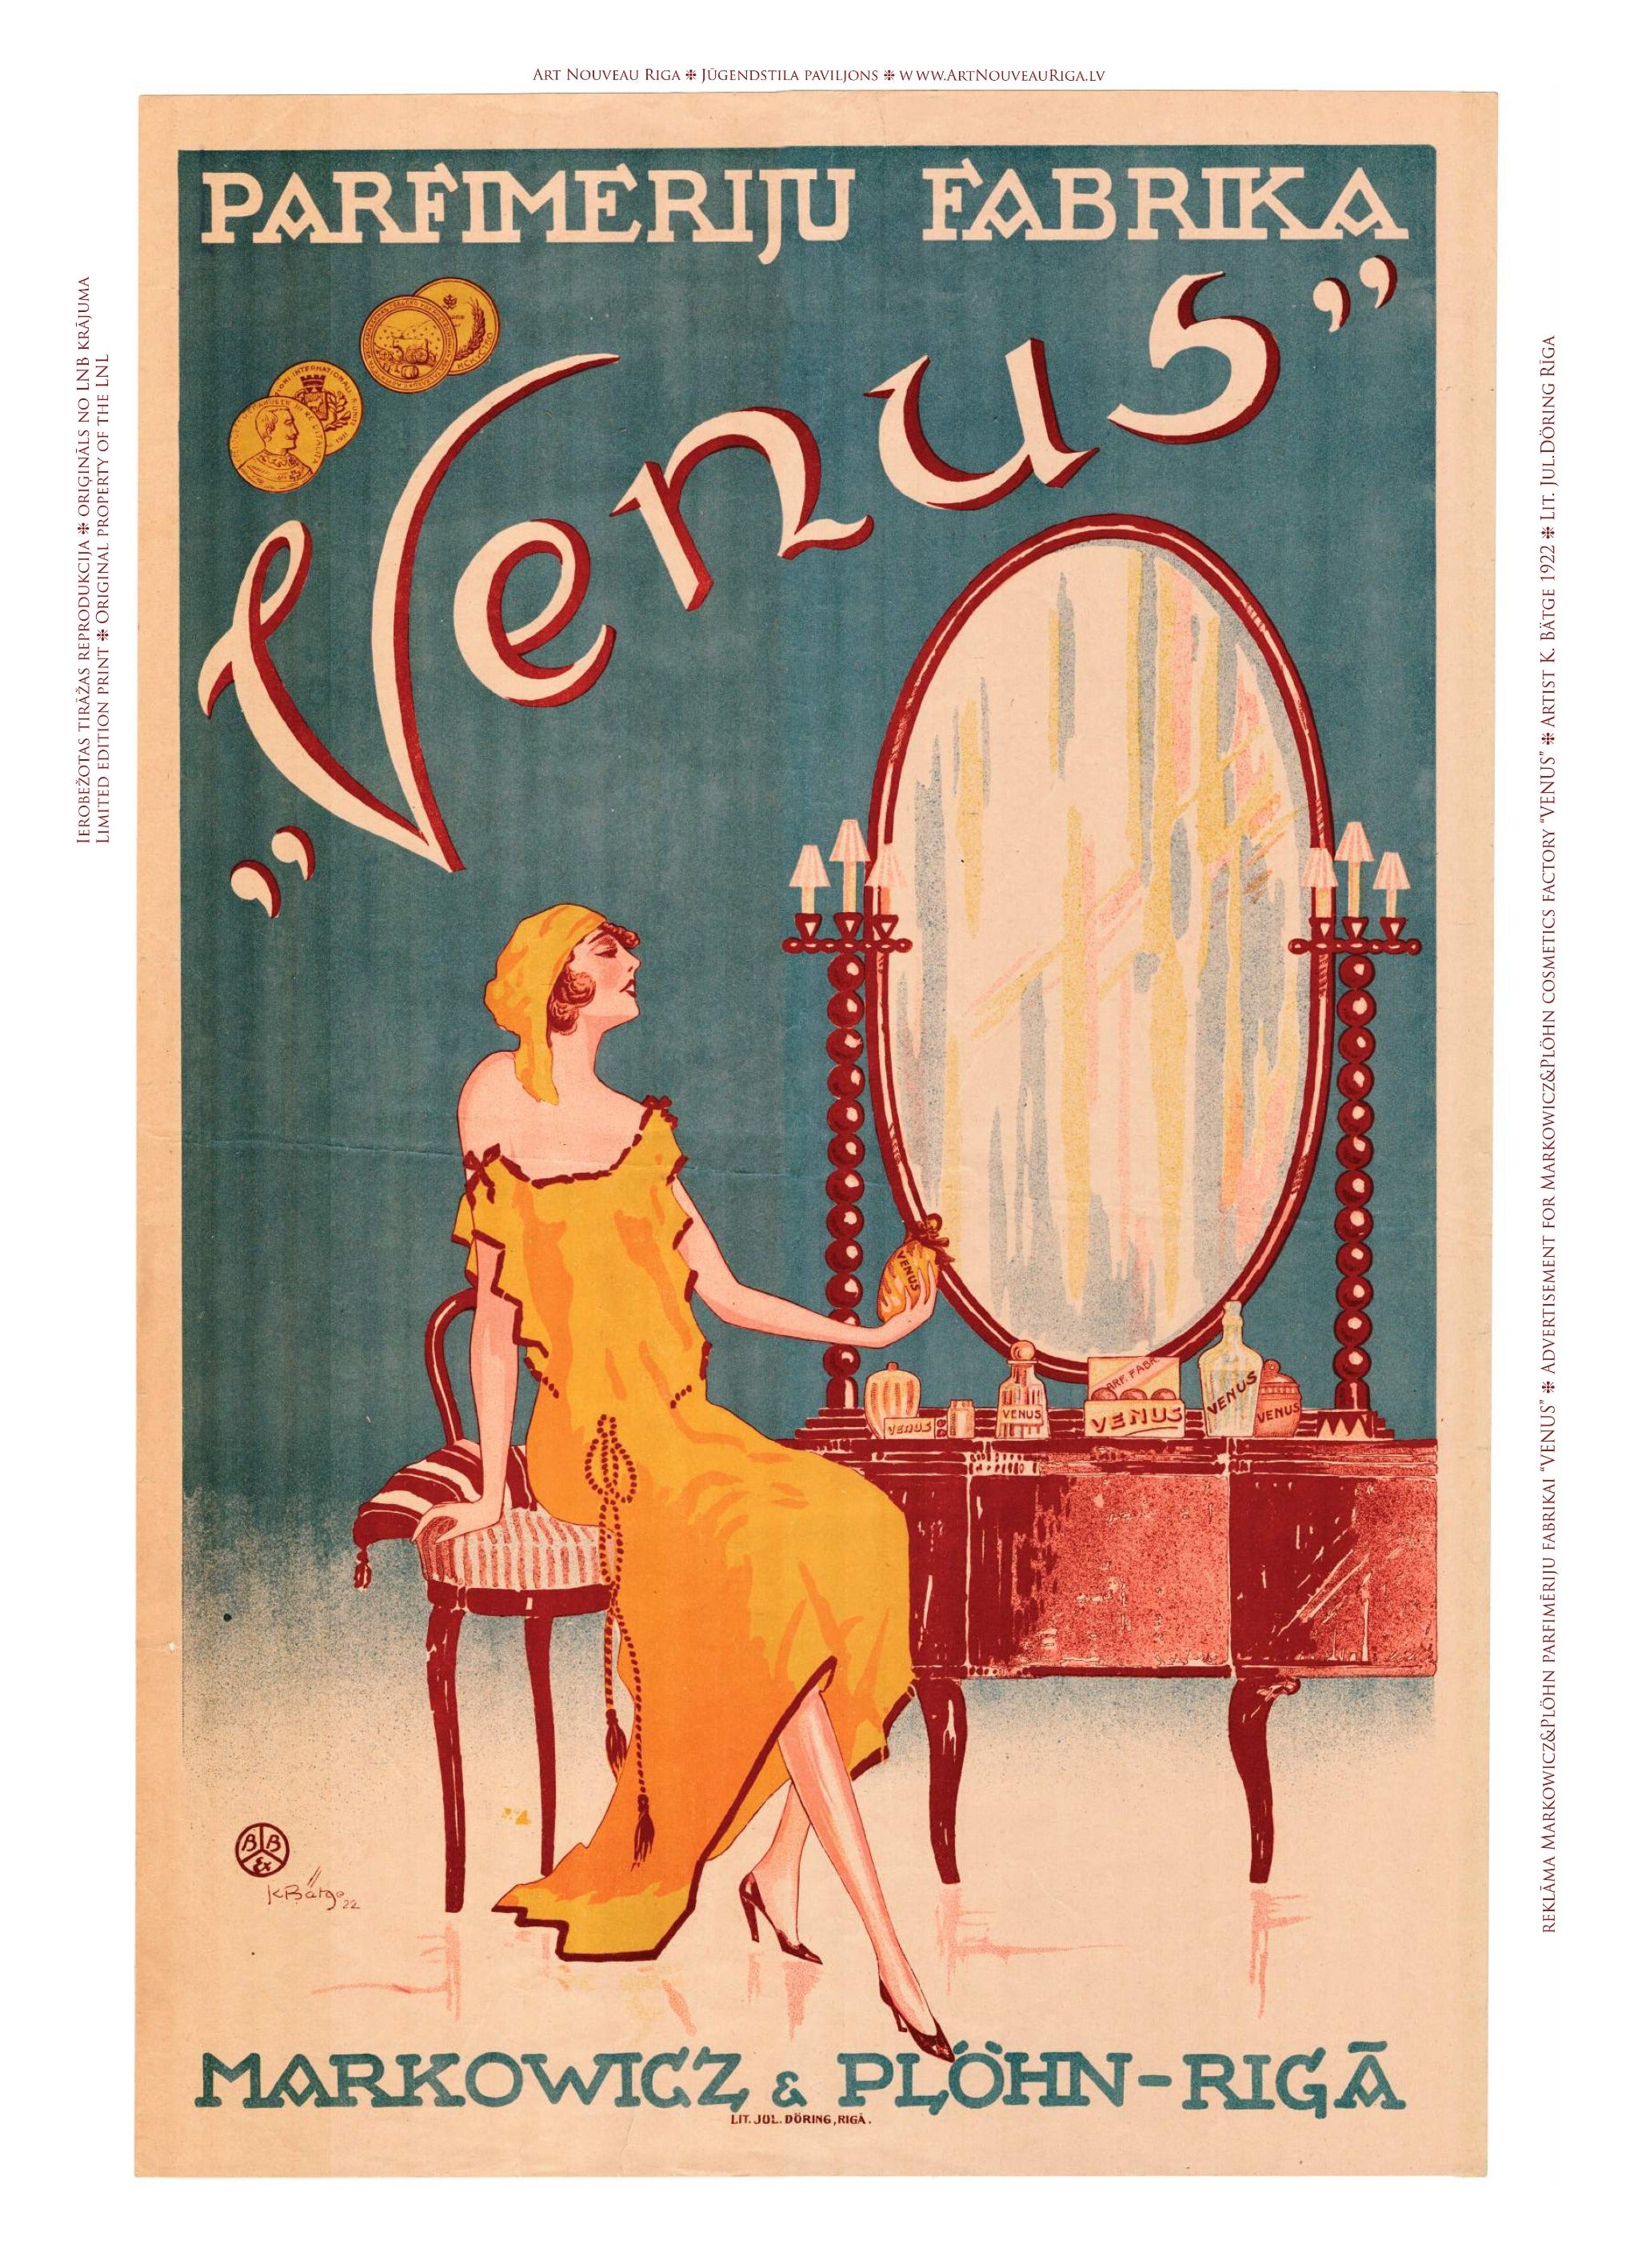 Venus – A Lady's Secret